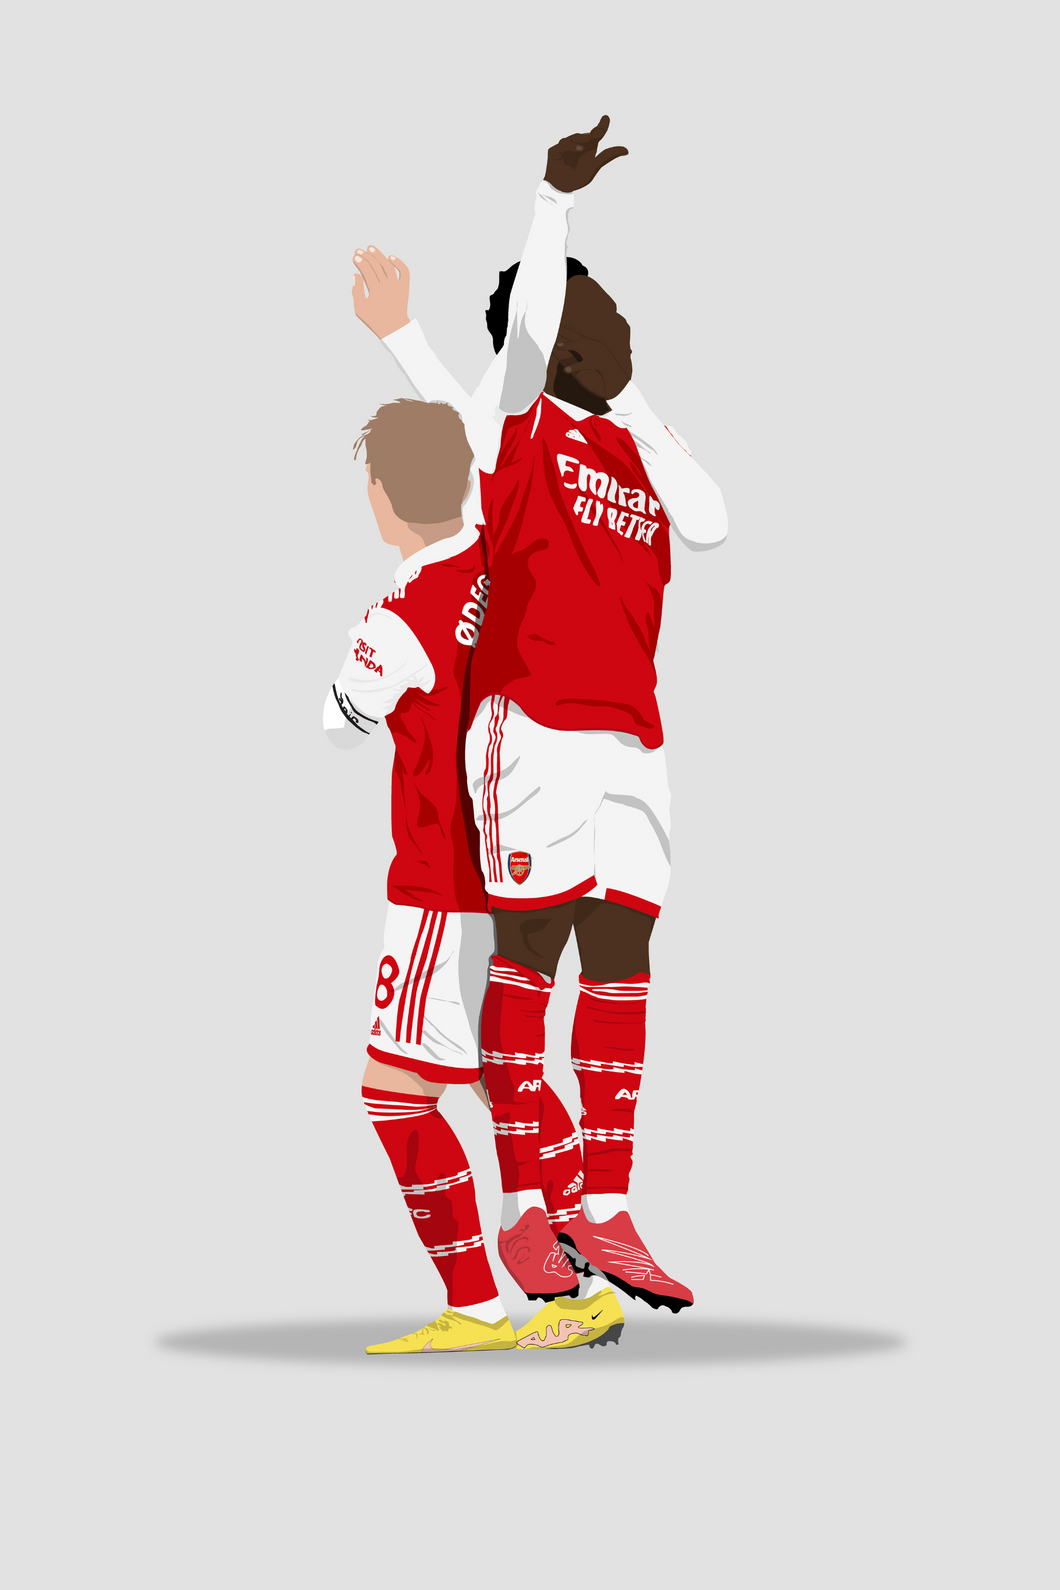 Saka & Odegaard - Arsenal Poster